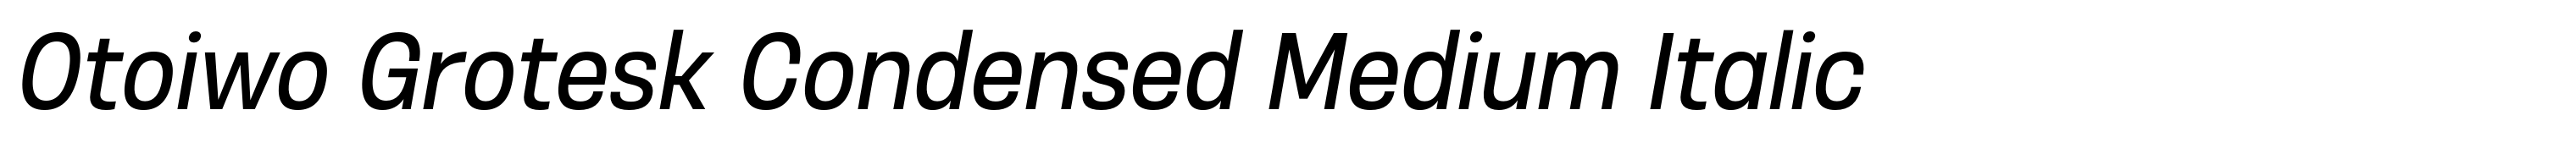 Otoiwo Grotesk Condensed Medium Italic